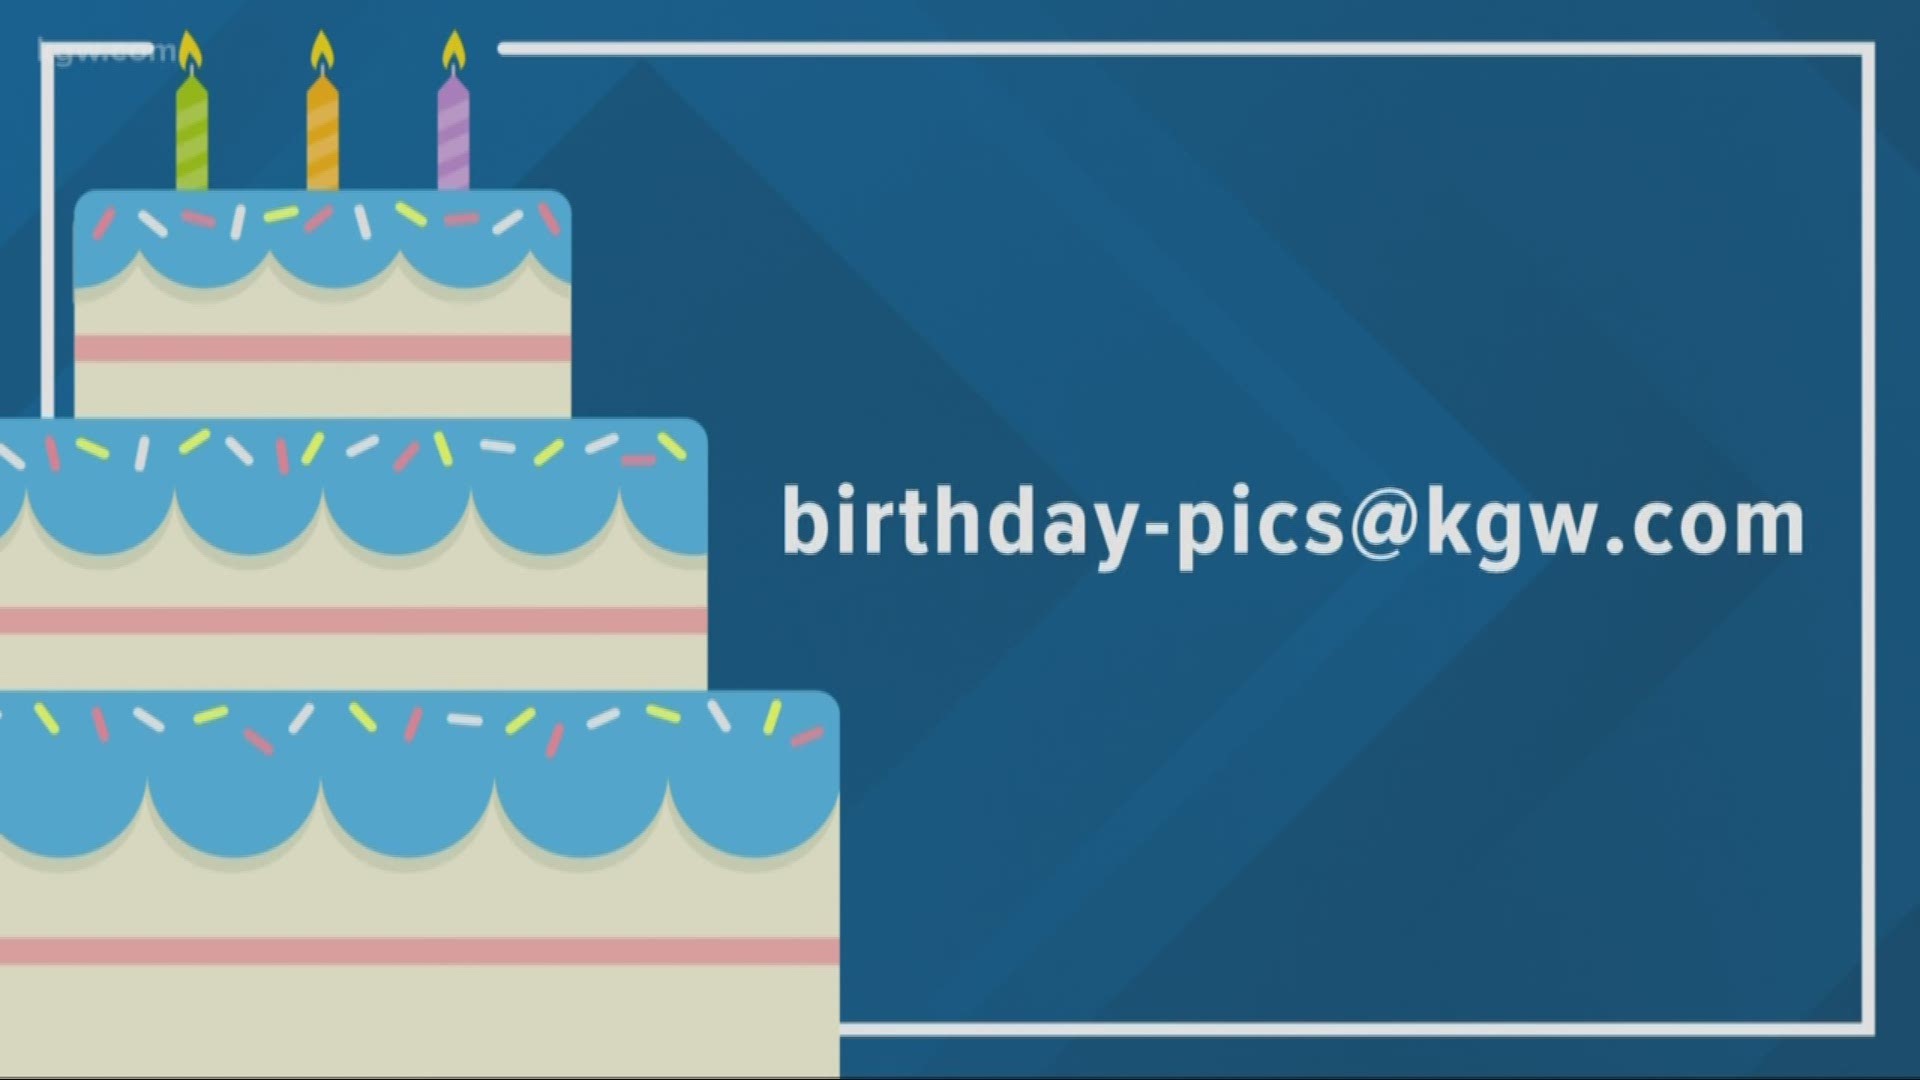 KGW viewer birthdays: 9-3-19